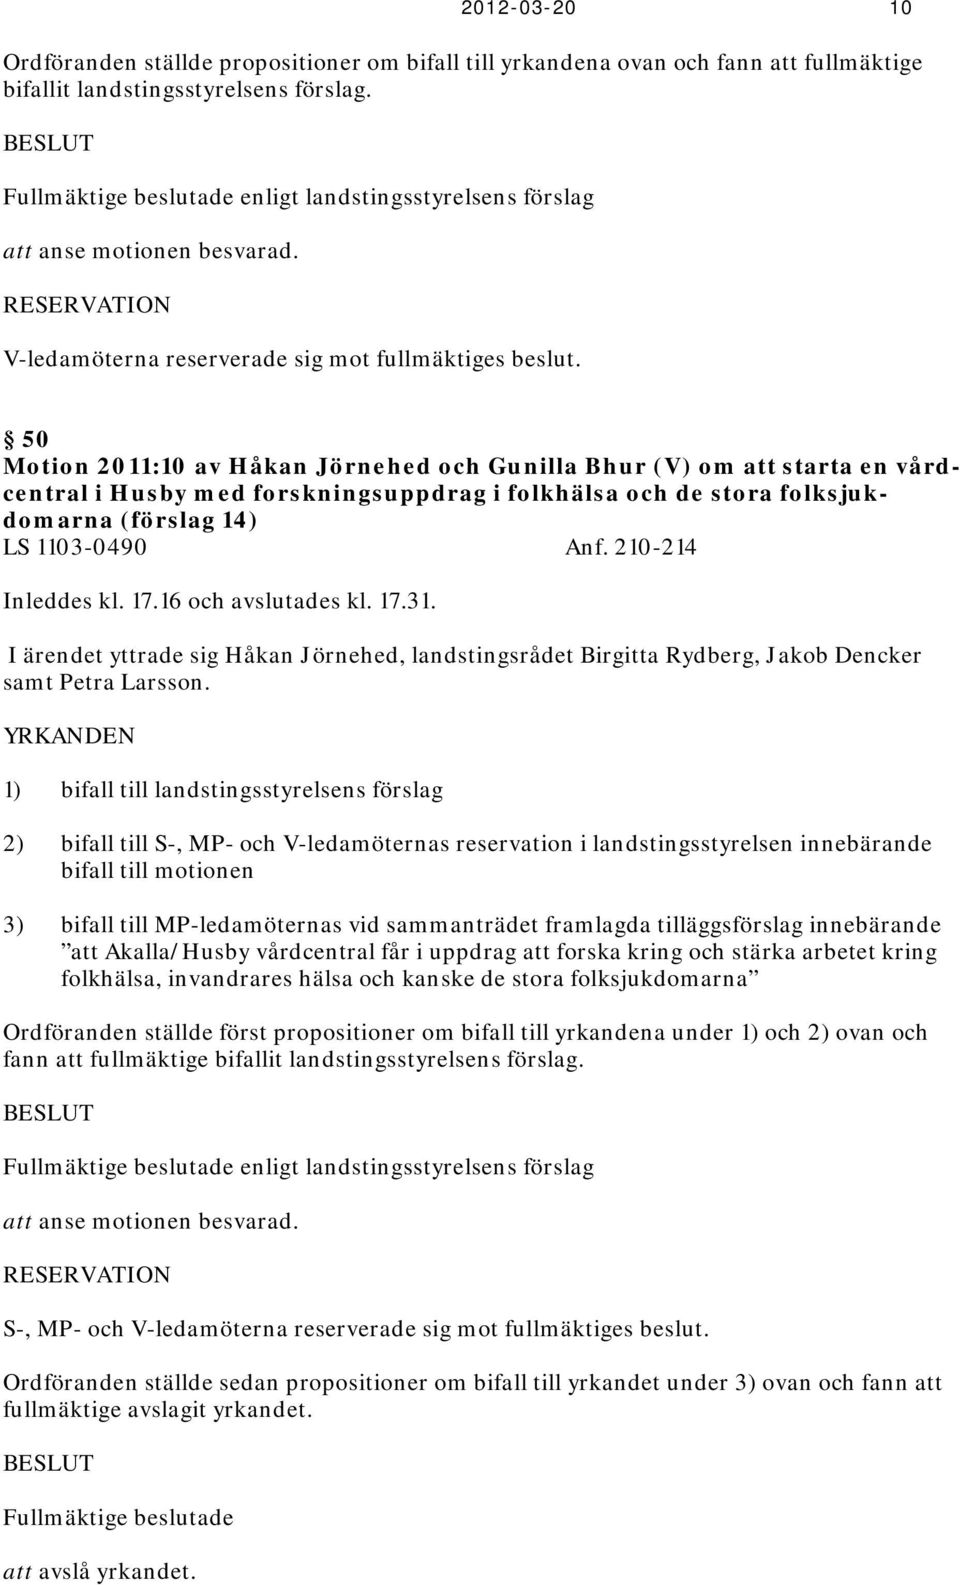 50 Motion 2011:10 av Håkan Jörnehed och Gunilla Bhur (V) om att starta en vårdcentral i Husby med forskningsuppdrag i folkhälsa och de stora folksjukdomarna (förslag 14) LS 1103-0490 Anf.